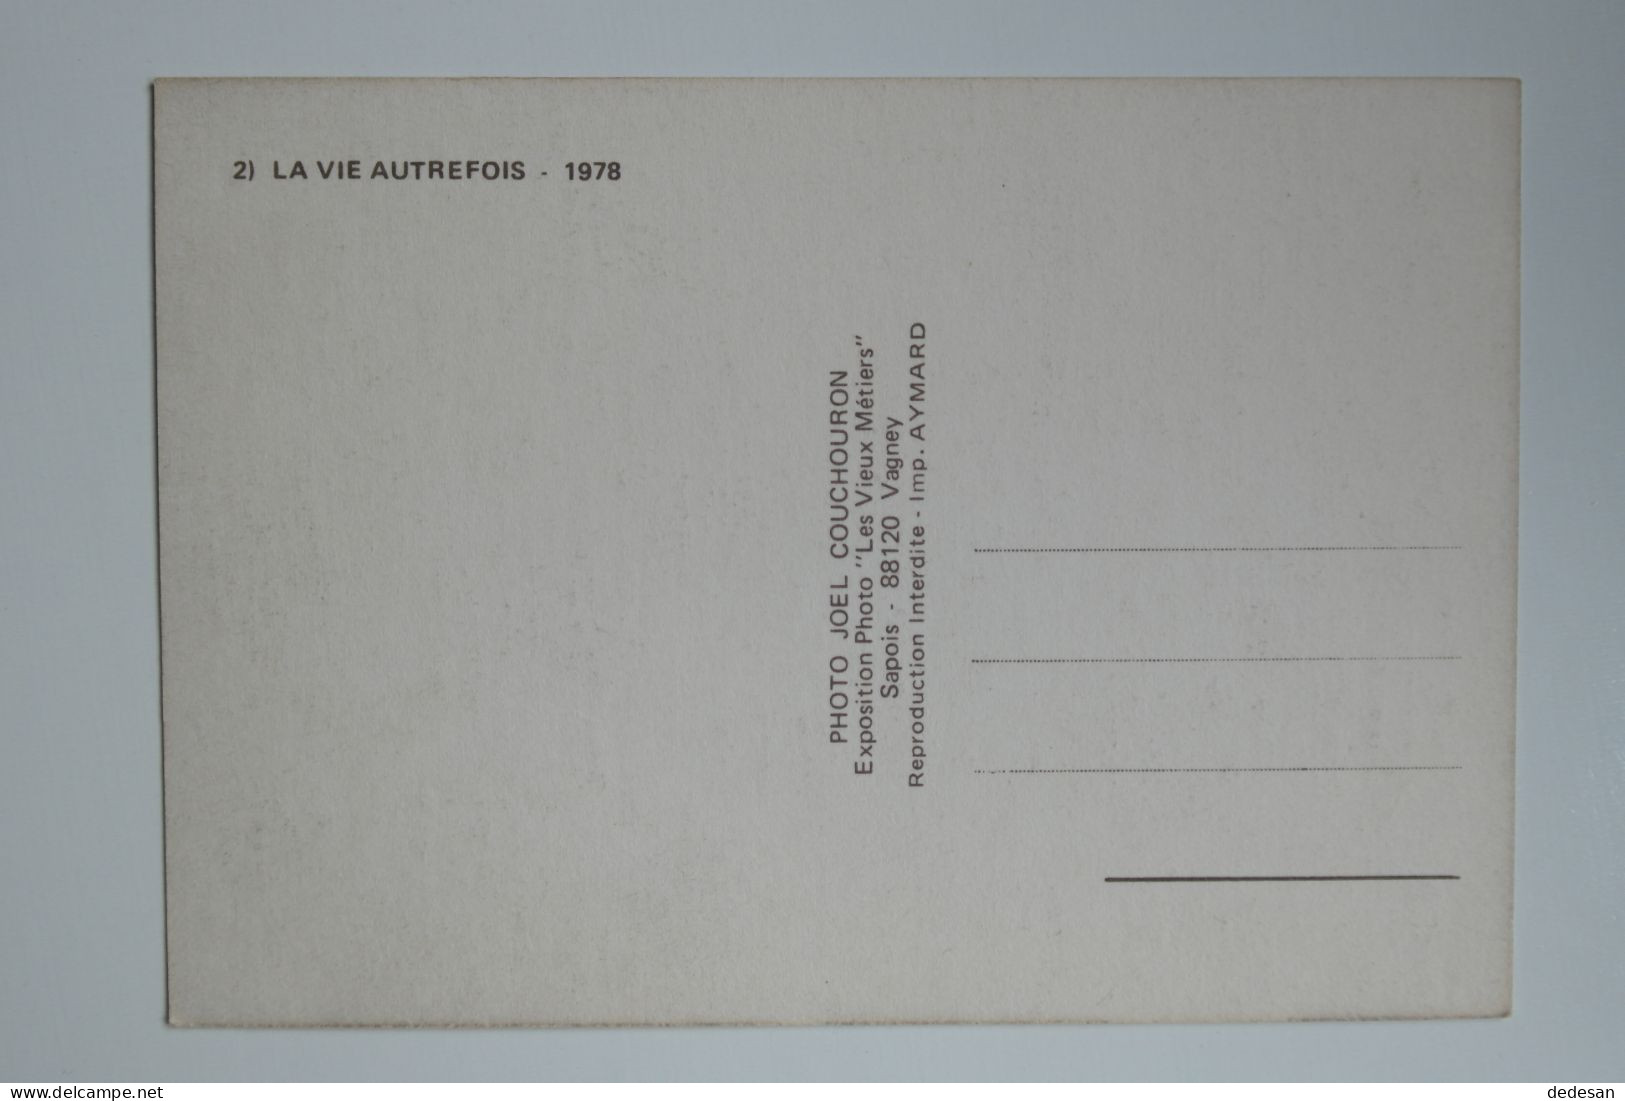 CPSM Grand Format 148x102 2) La Vie Autrefois 1978 Editions Les Vieux Métiers - CHA03 - Campesinos